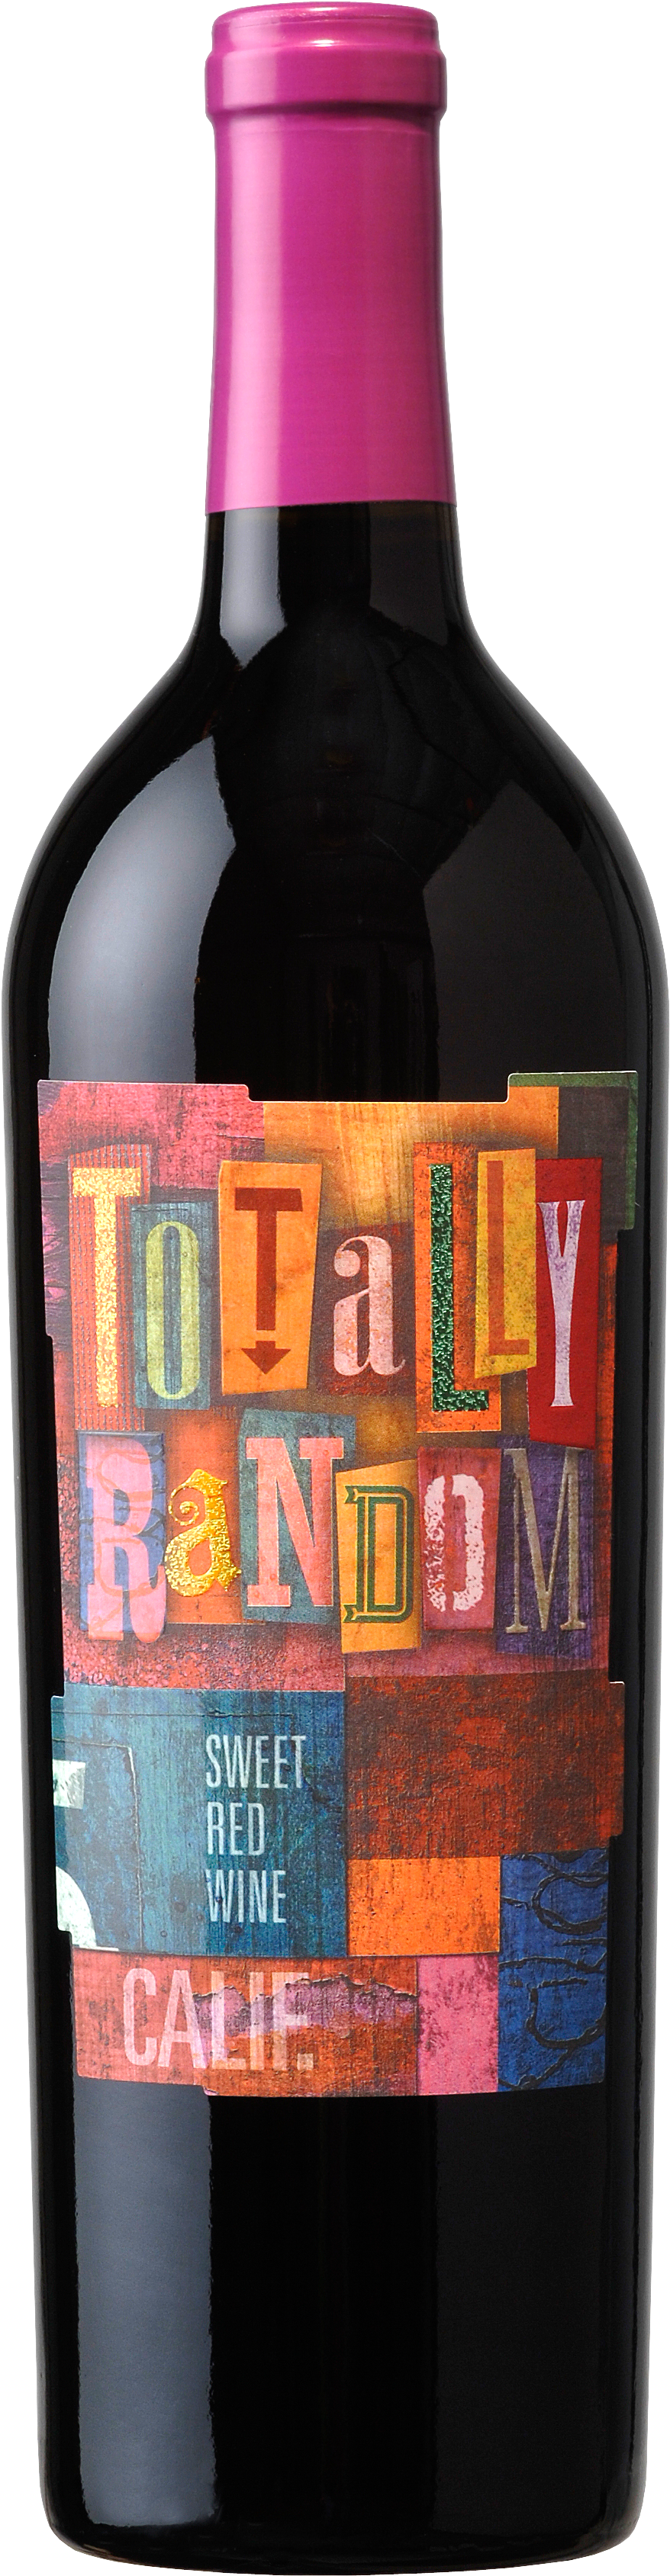 Bottle Png Image, Free Download Image Of Bottle - Random Wine (1350x3900)